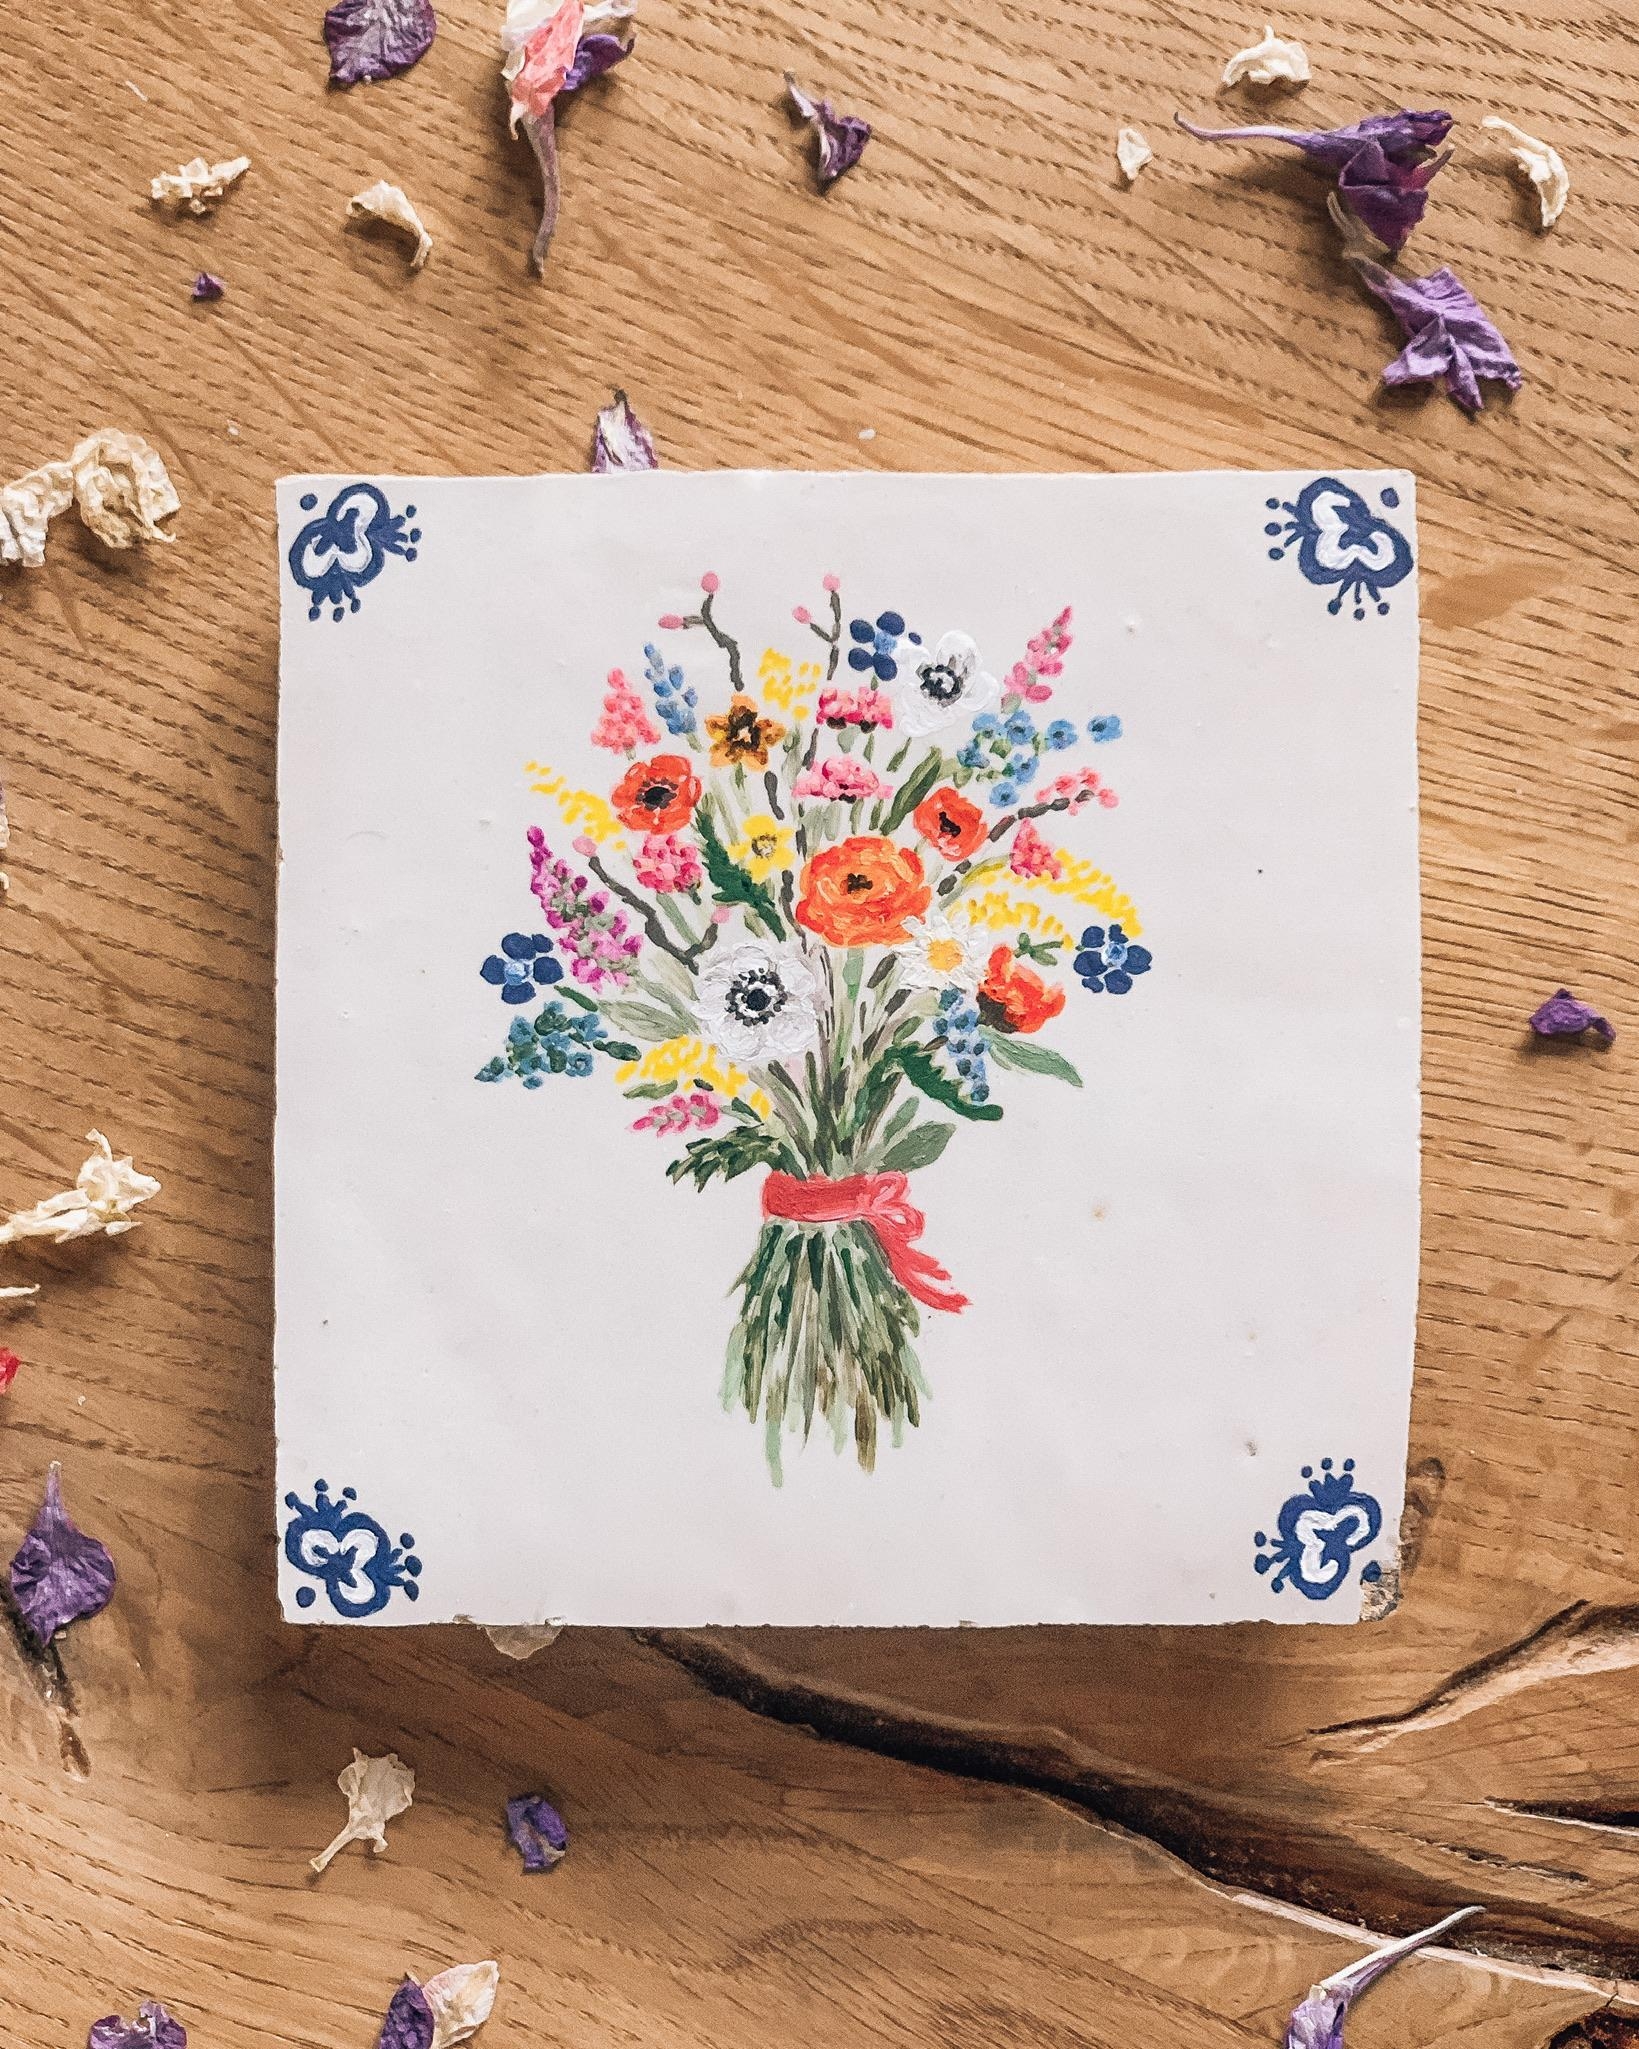 Flowers for You! 💐Zum #freshflowerfriday Heute ein kleines Blumenbild auf einer alten Fliese #diy #painting #blumenbild 